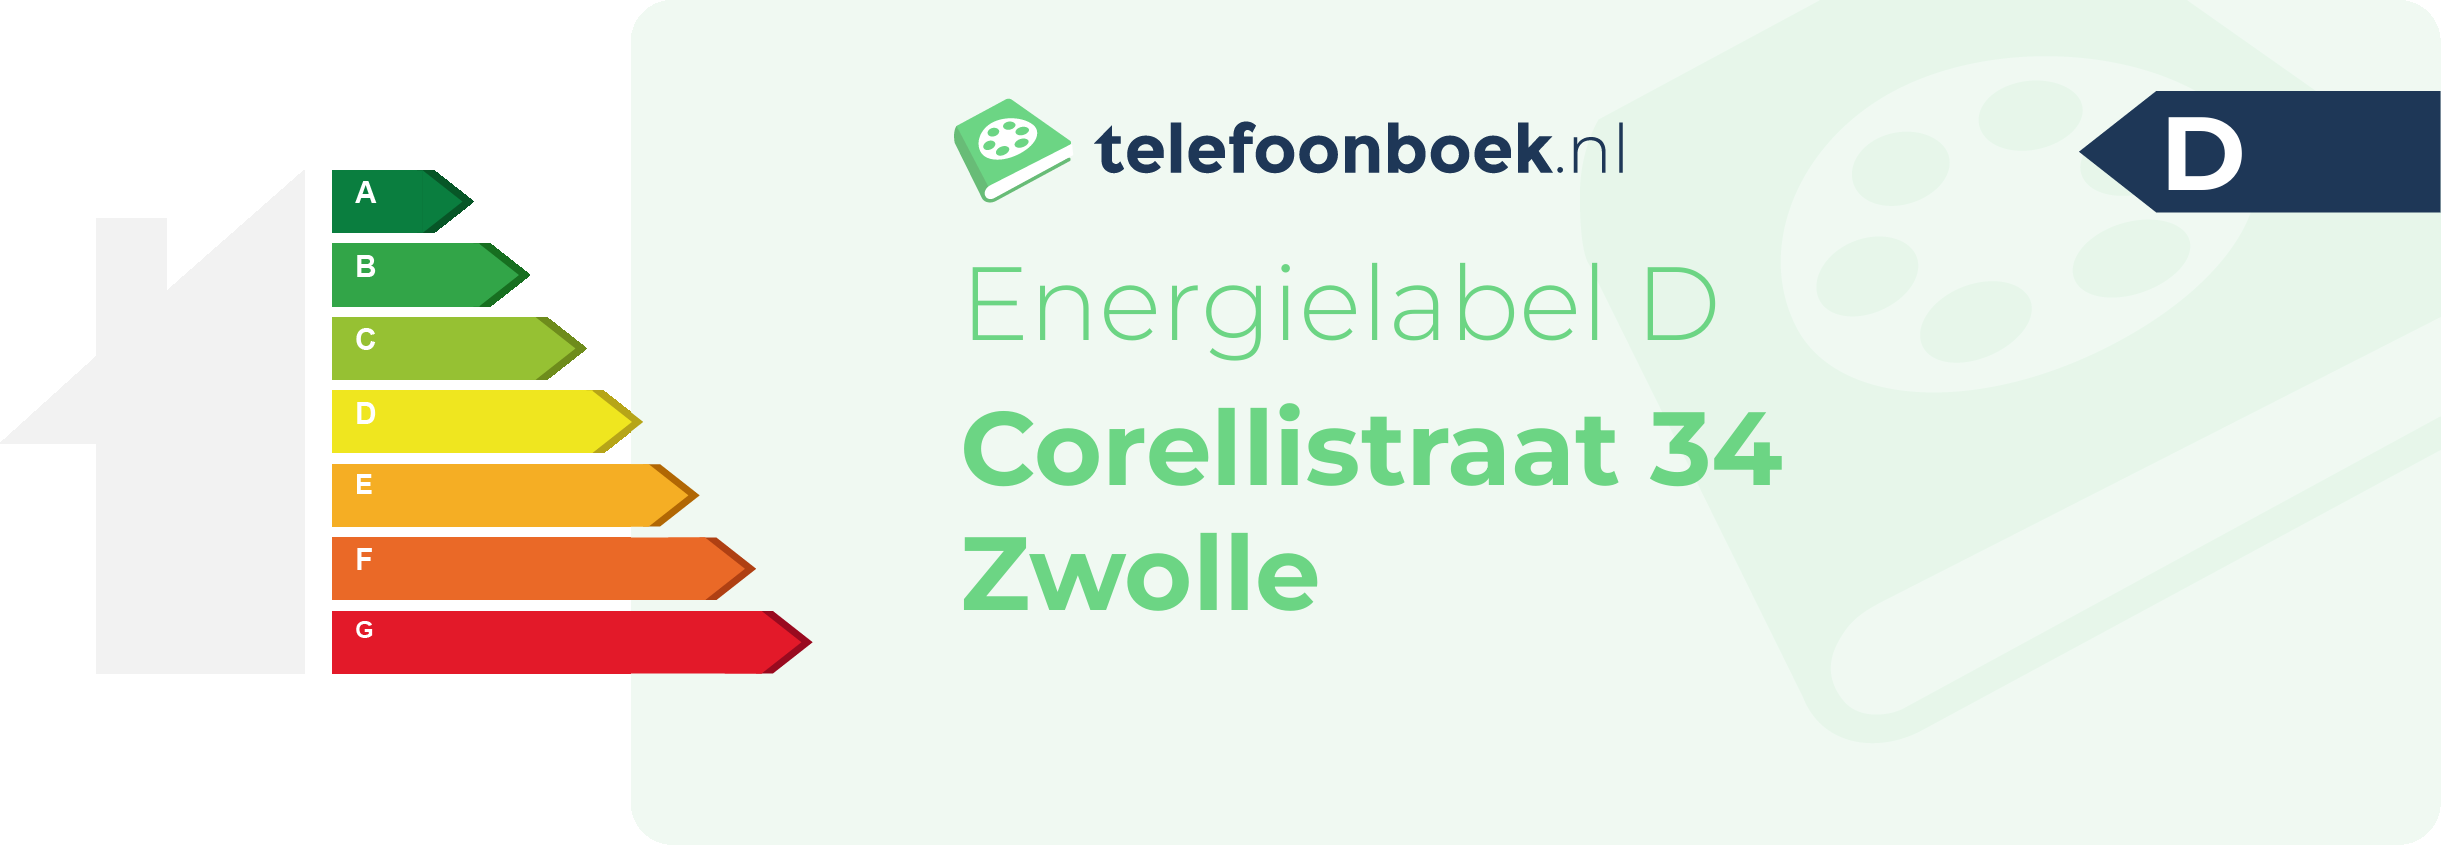 Energielabel Corellistraat 34 Zwolle